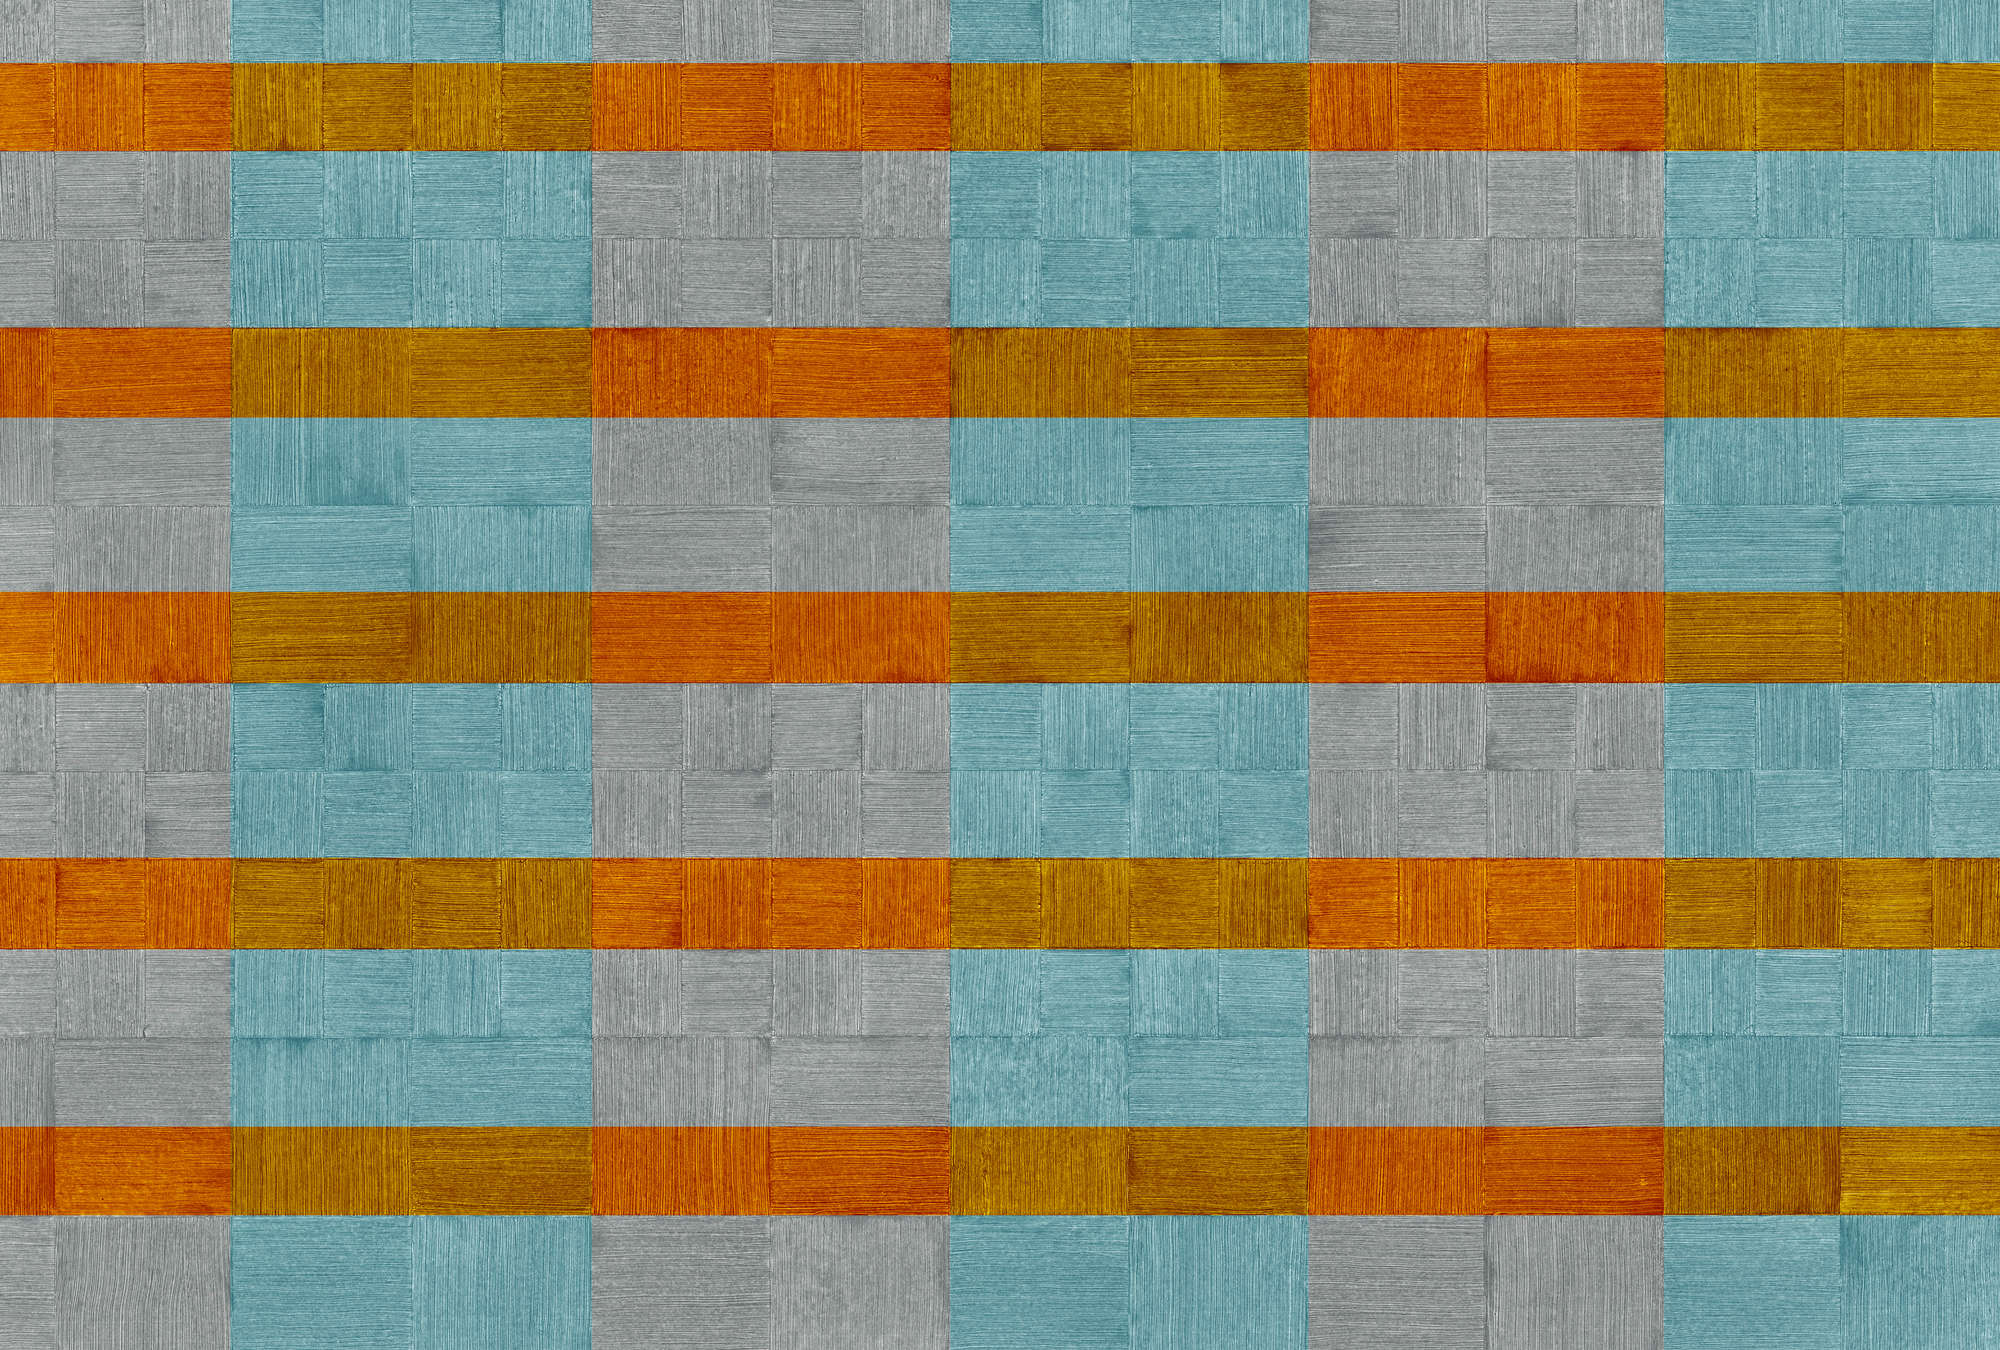             Papier peint rayures, motifs structurés, à carreaux - bleu, gris, orange
        